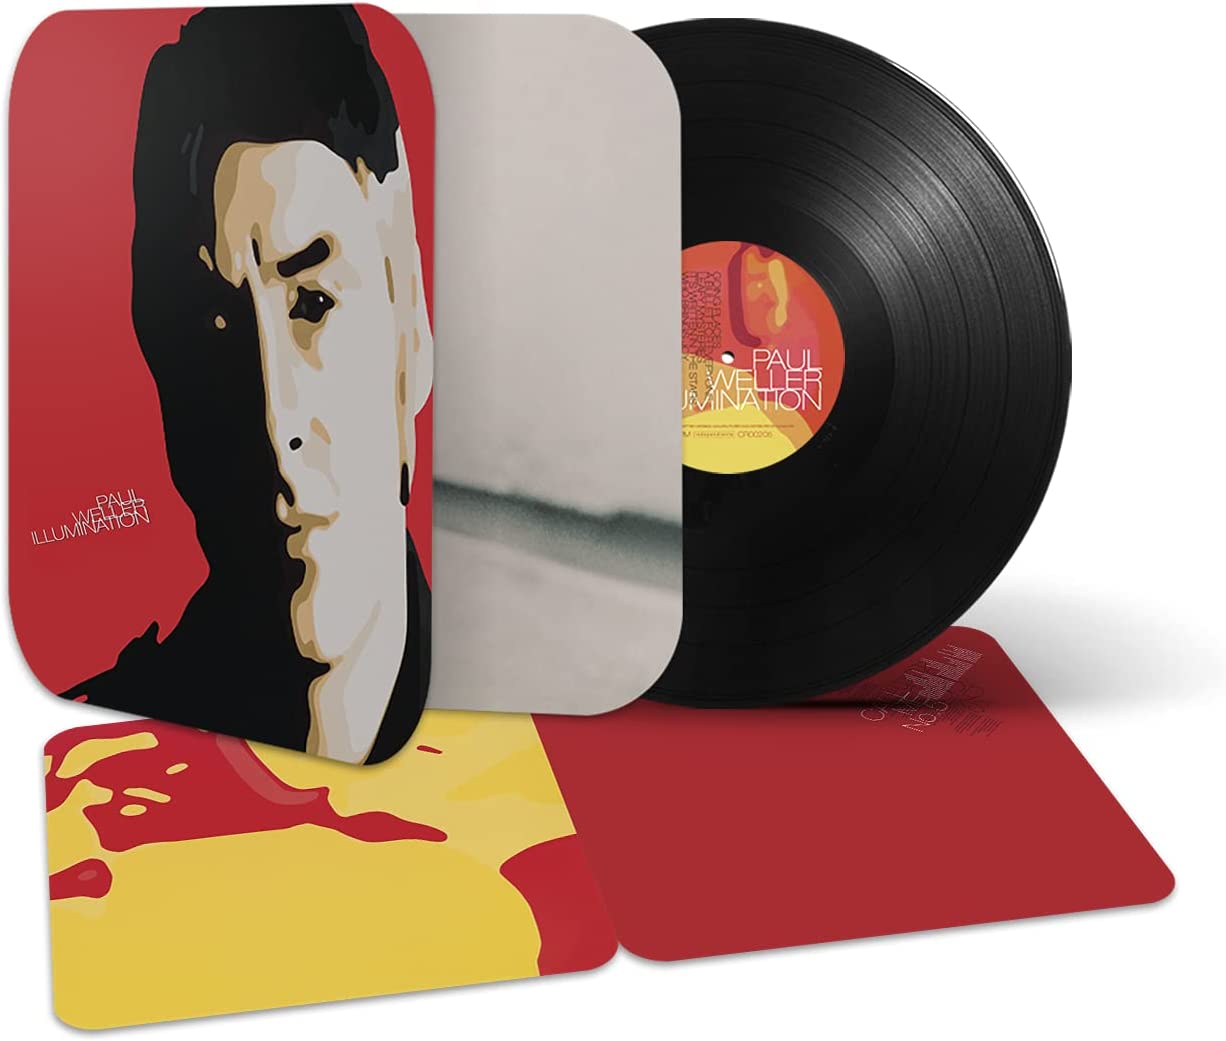 Paul Weller / Illumination vinyl reissue